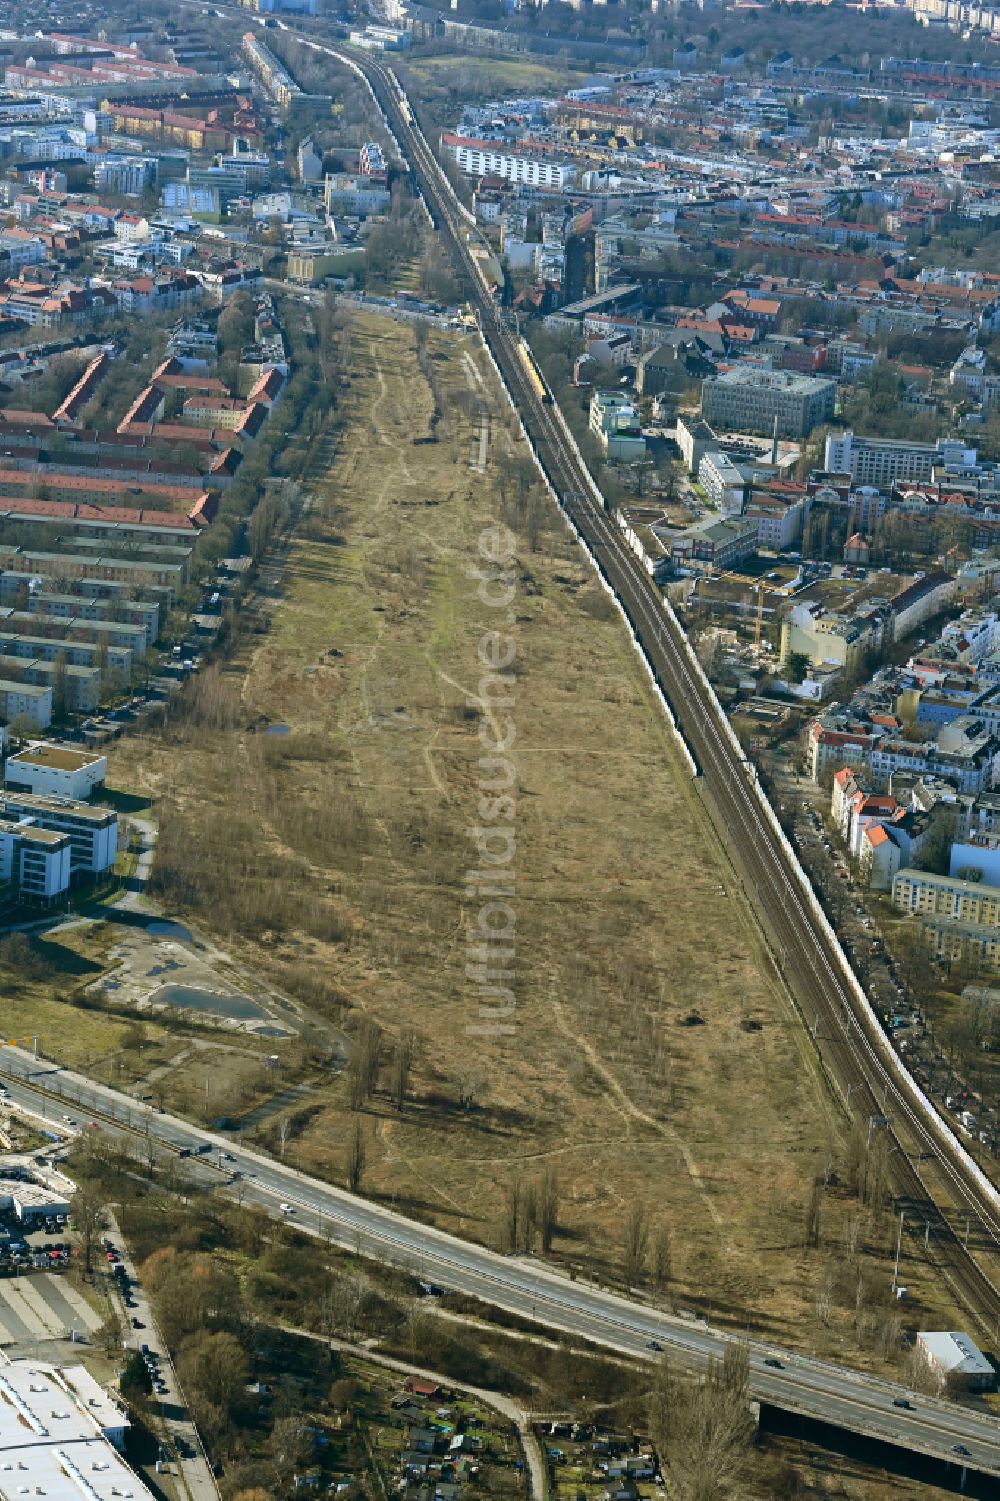 Luftbild Berlin - Entwicklungsgebiet auf dem ehemaligen Rangierbahnhof Pankow der Deutschen Bahn zum neuen Stadtquartier Pankower Tor in Berlin, Deutschland